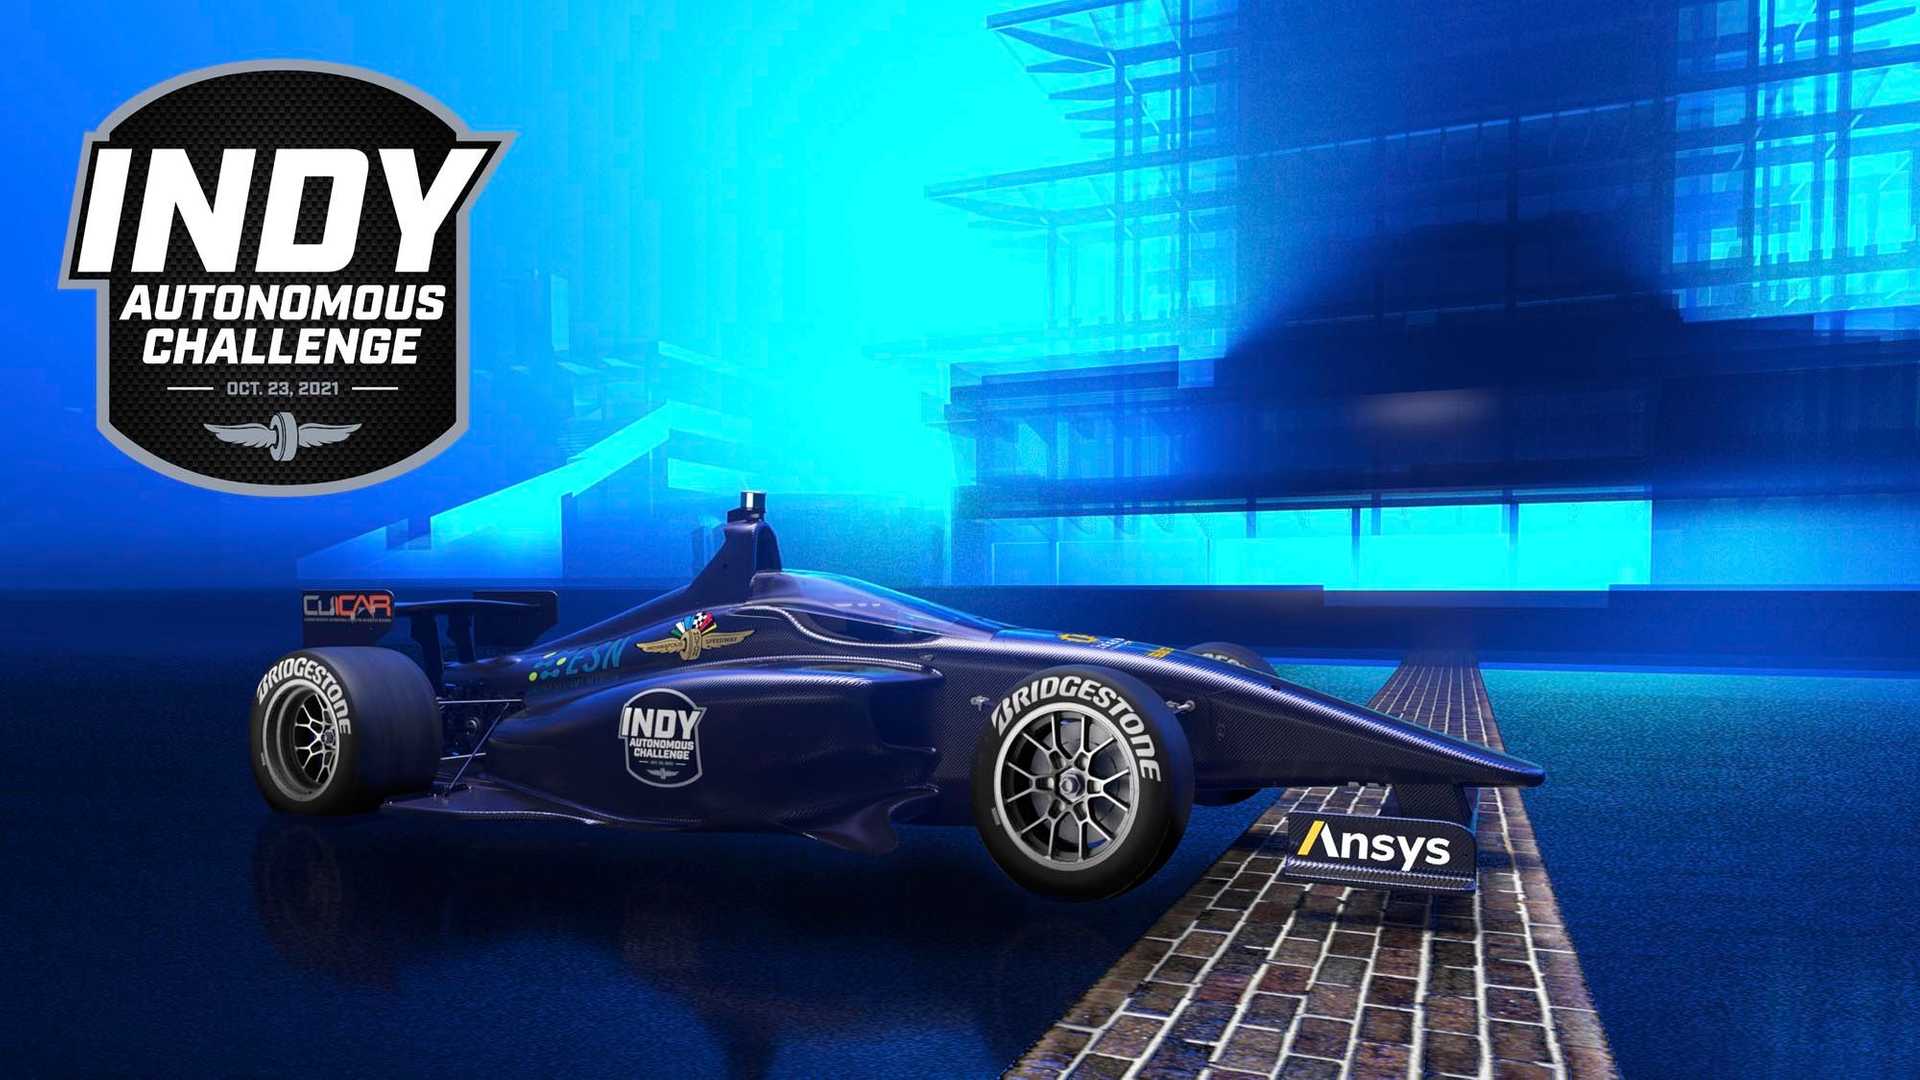 نمای سه چهارم خودرو خودران ایندی کار / IndyCar Autonomous Series در پیست 